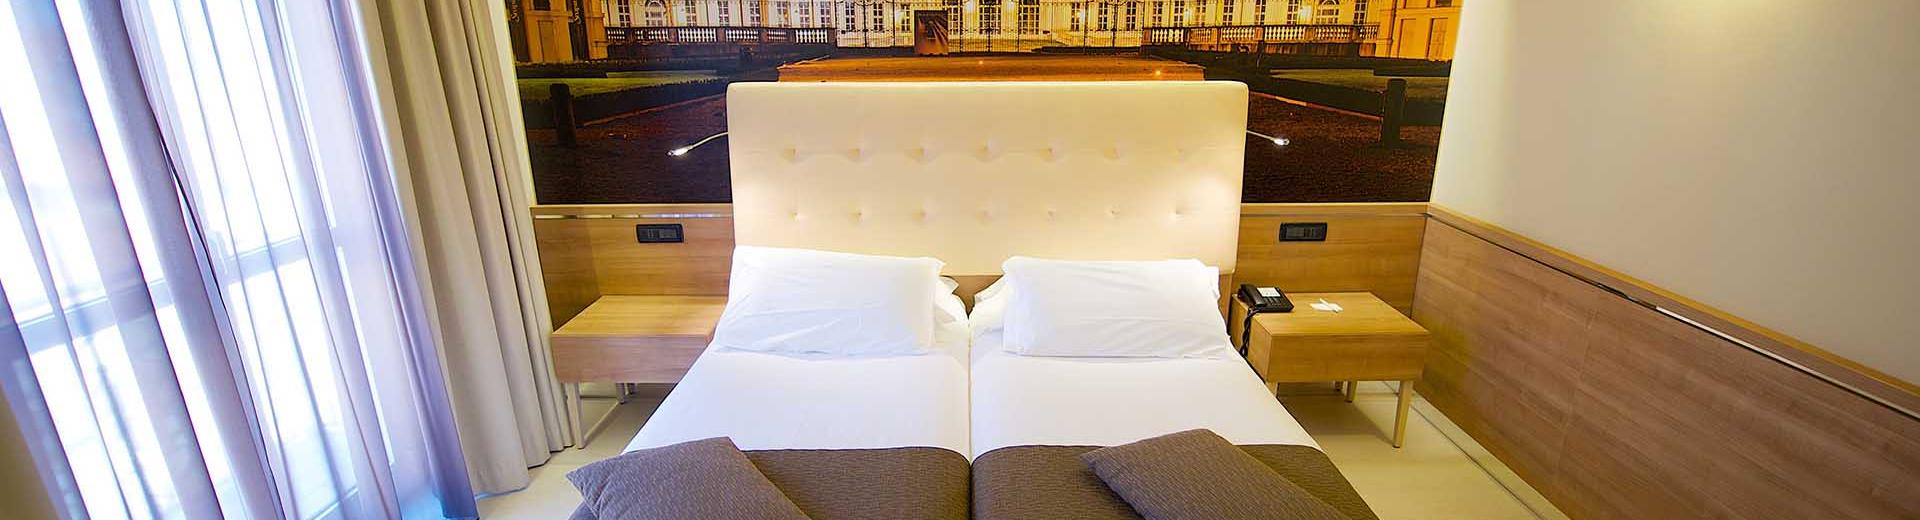 Les juniors suites du Best Western Hotel Luxor. Hôtel 3 étoiles à Turin